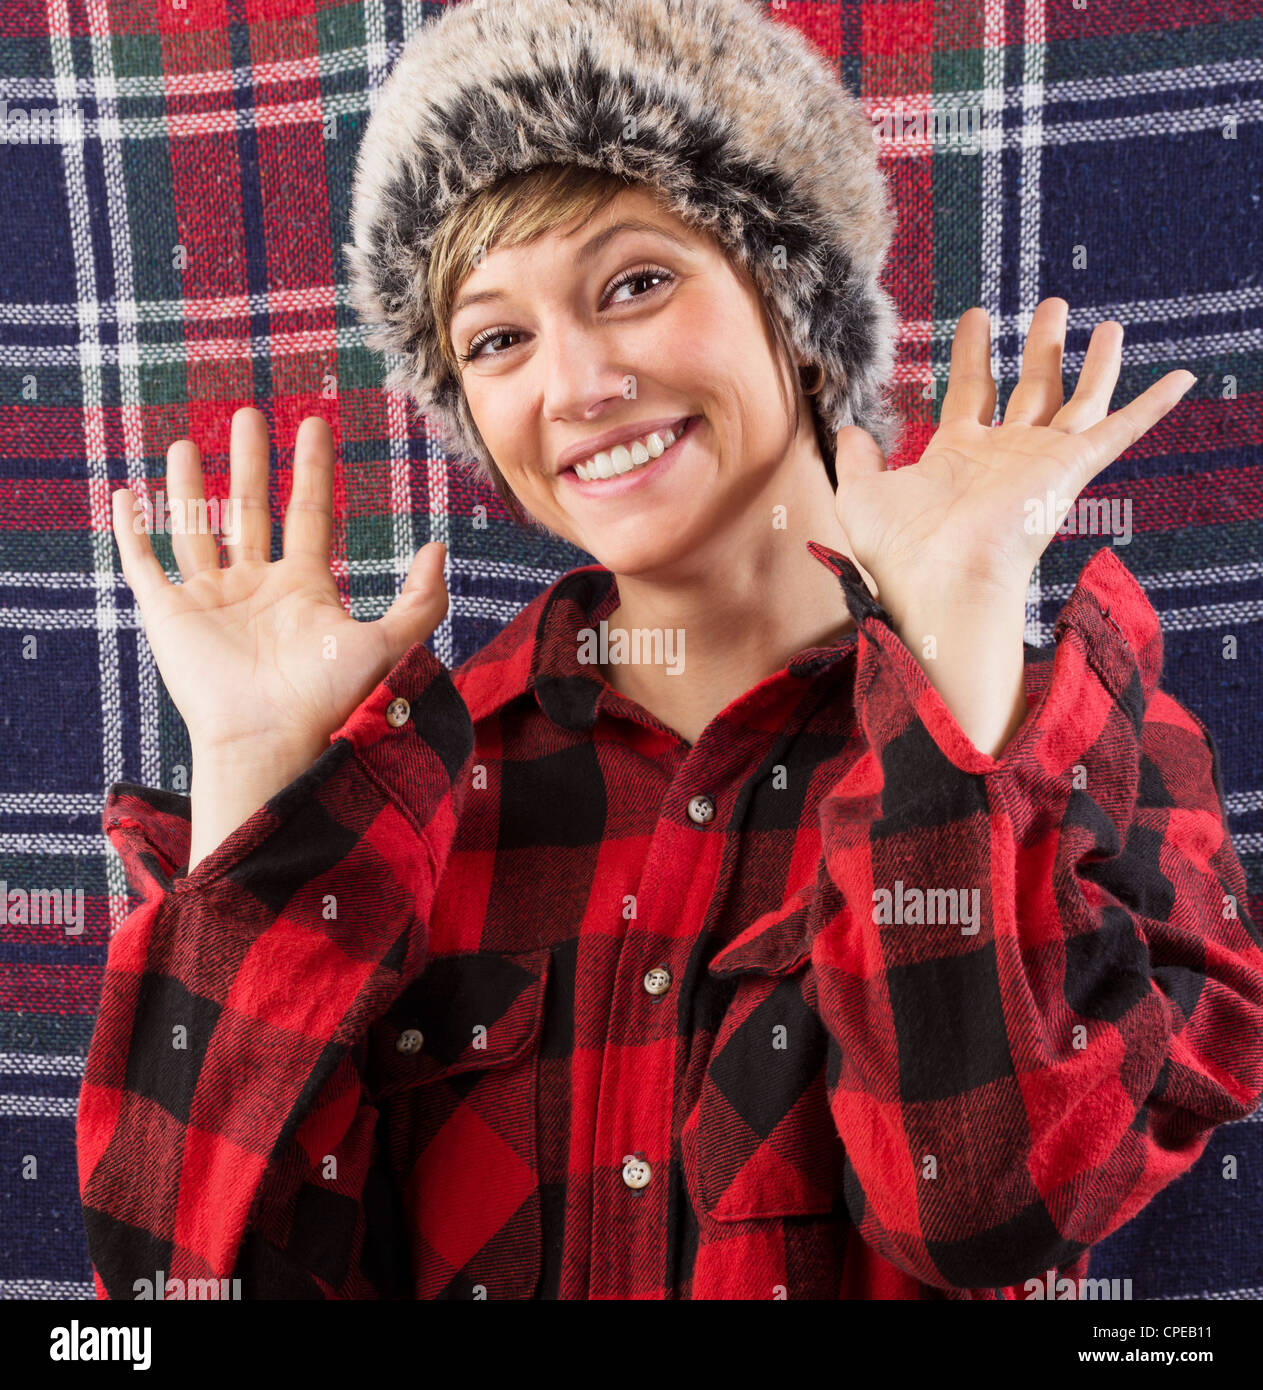 Smiling young woman wearing bûcheron à carreaux chemise et fur hat forme à deux mains à l'appareil photo. Funny studio shot Banque D'Images